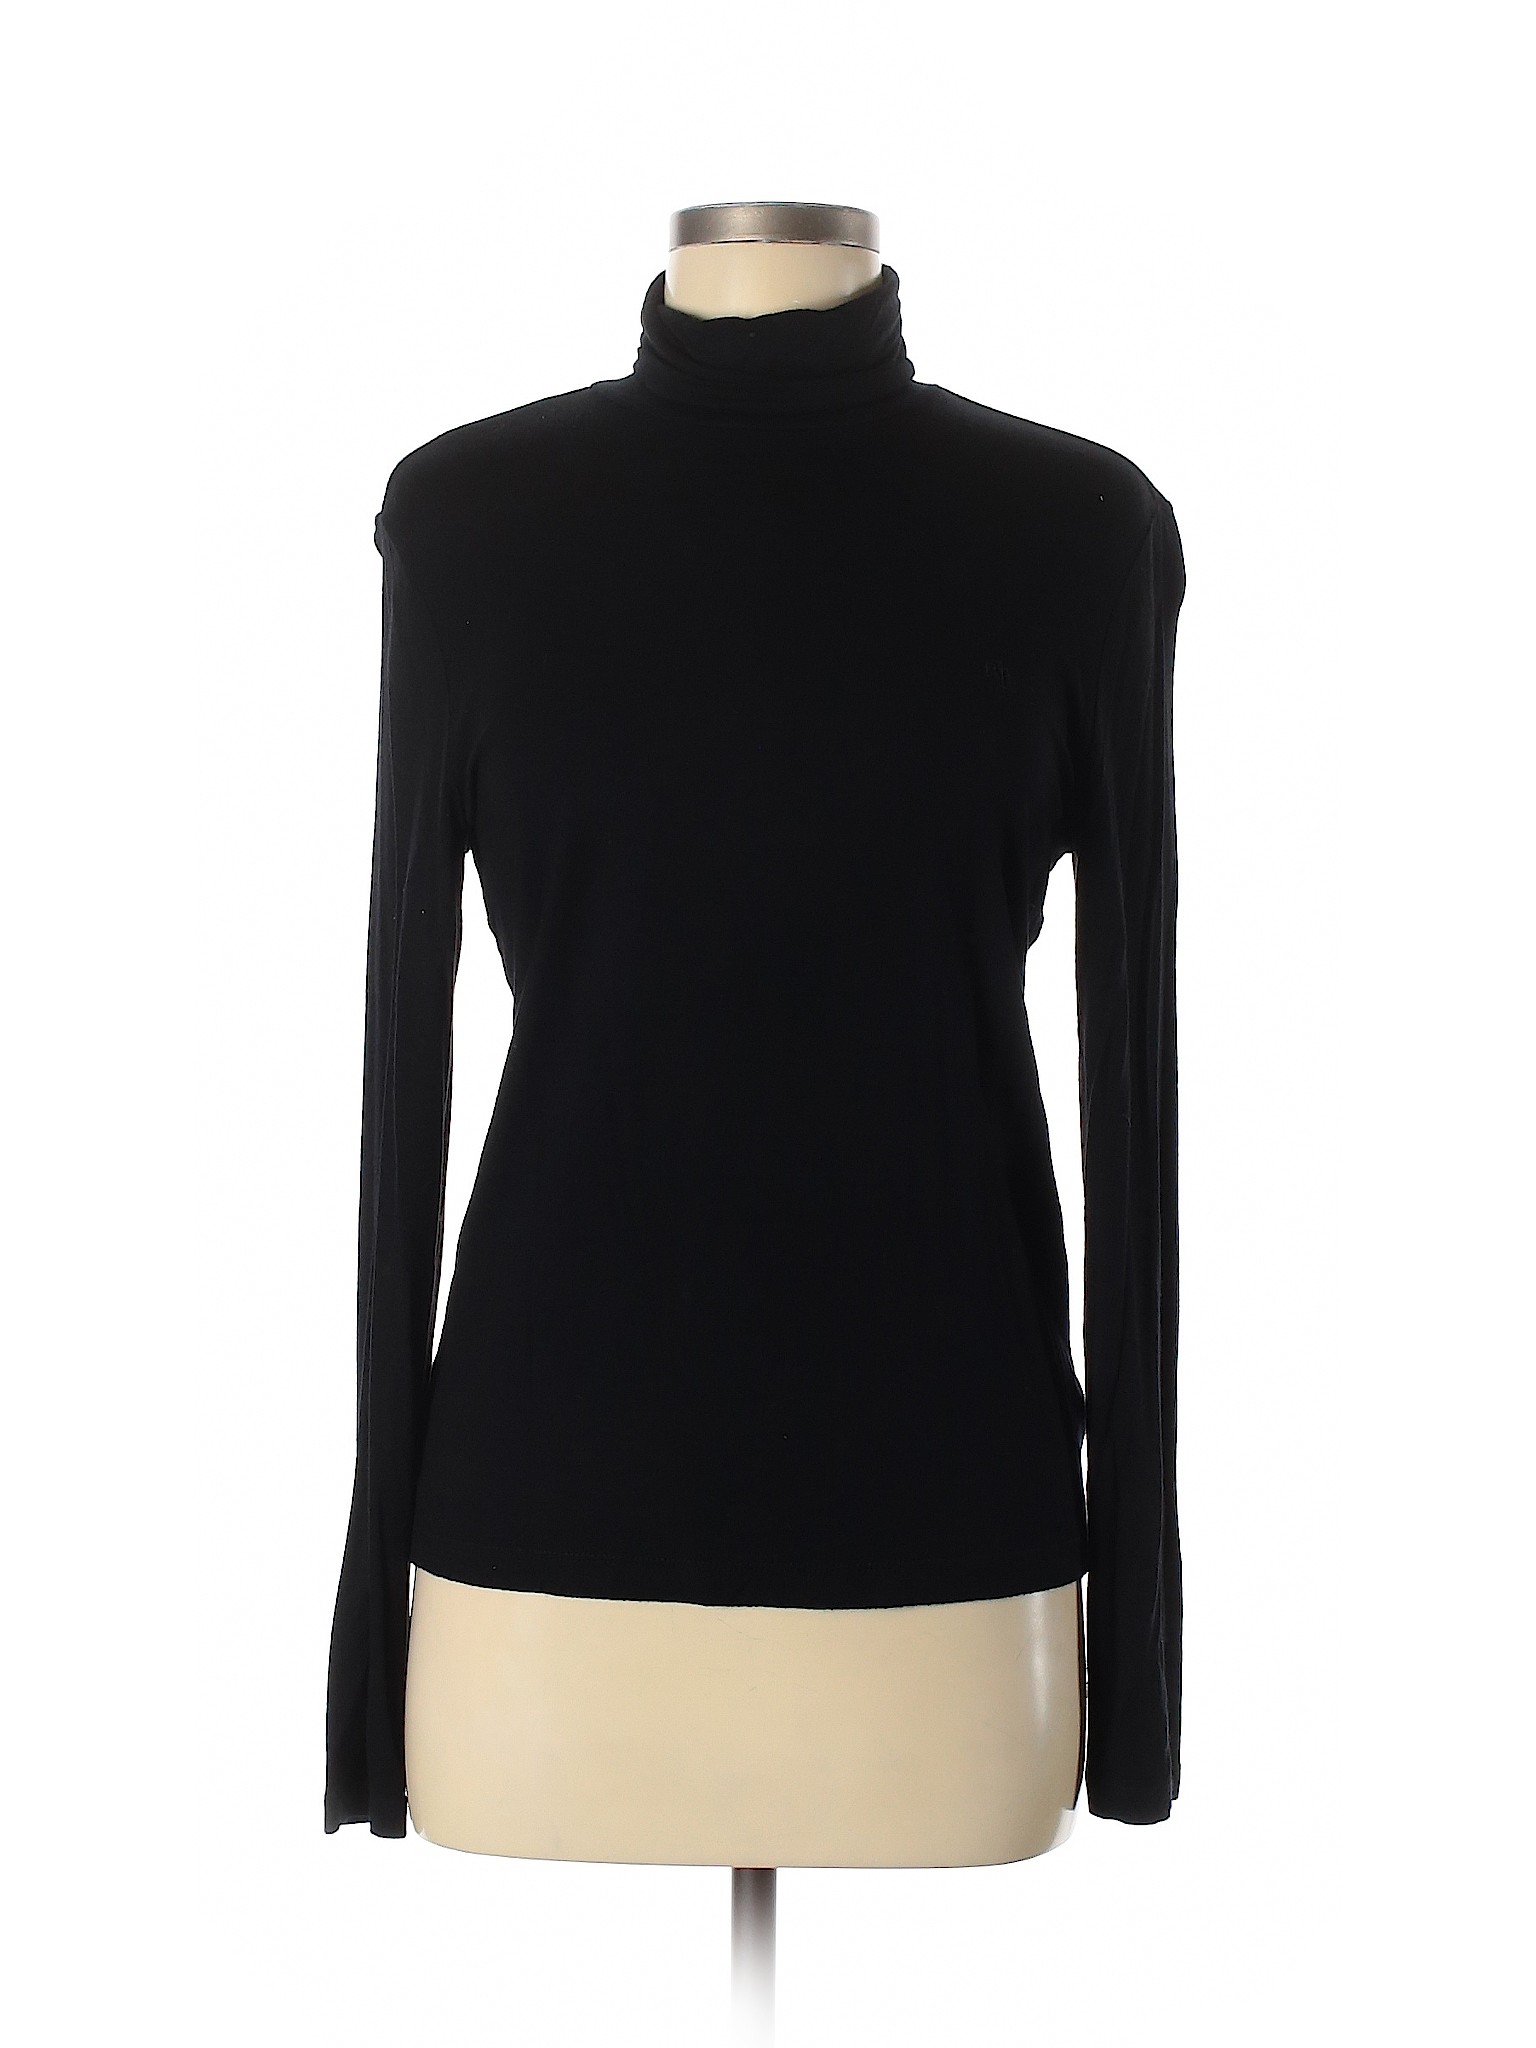 Lauren by Ralph Lauren Solid Black Turtleneck Sweater Size M - 72% off ...